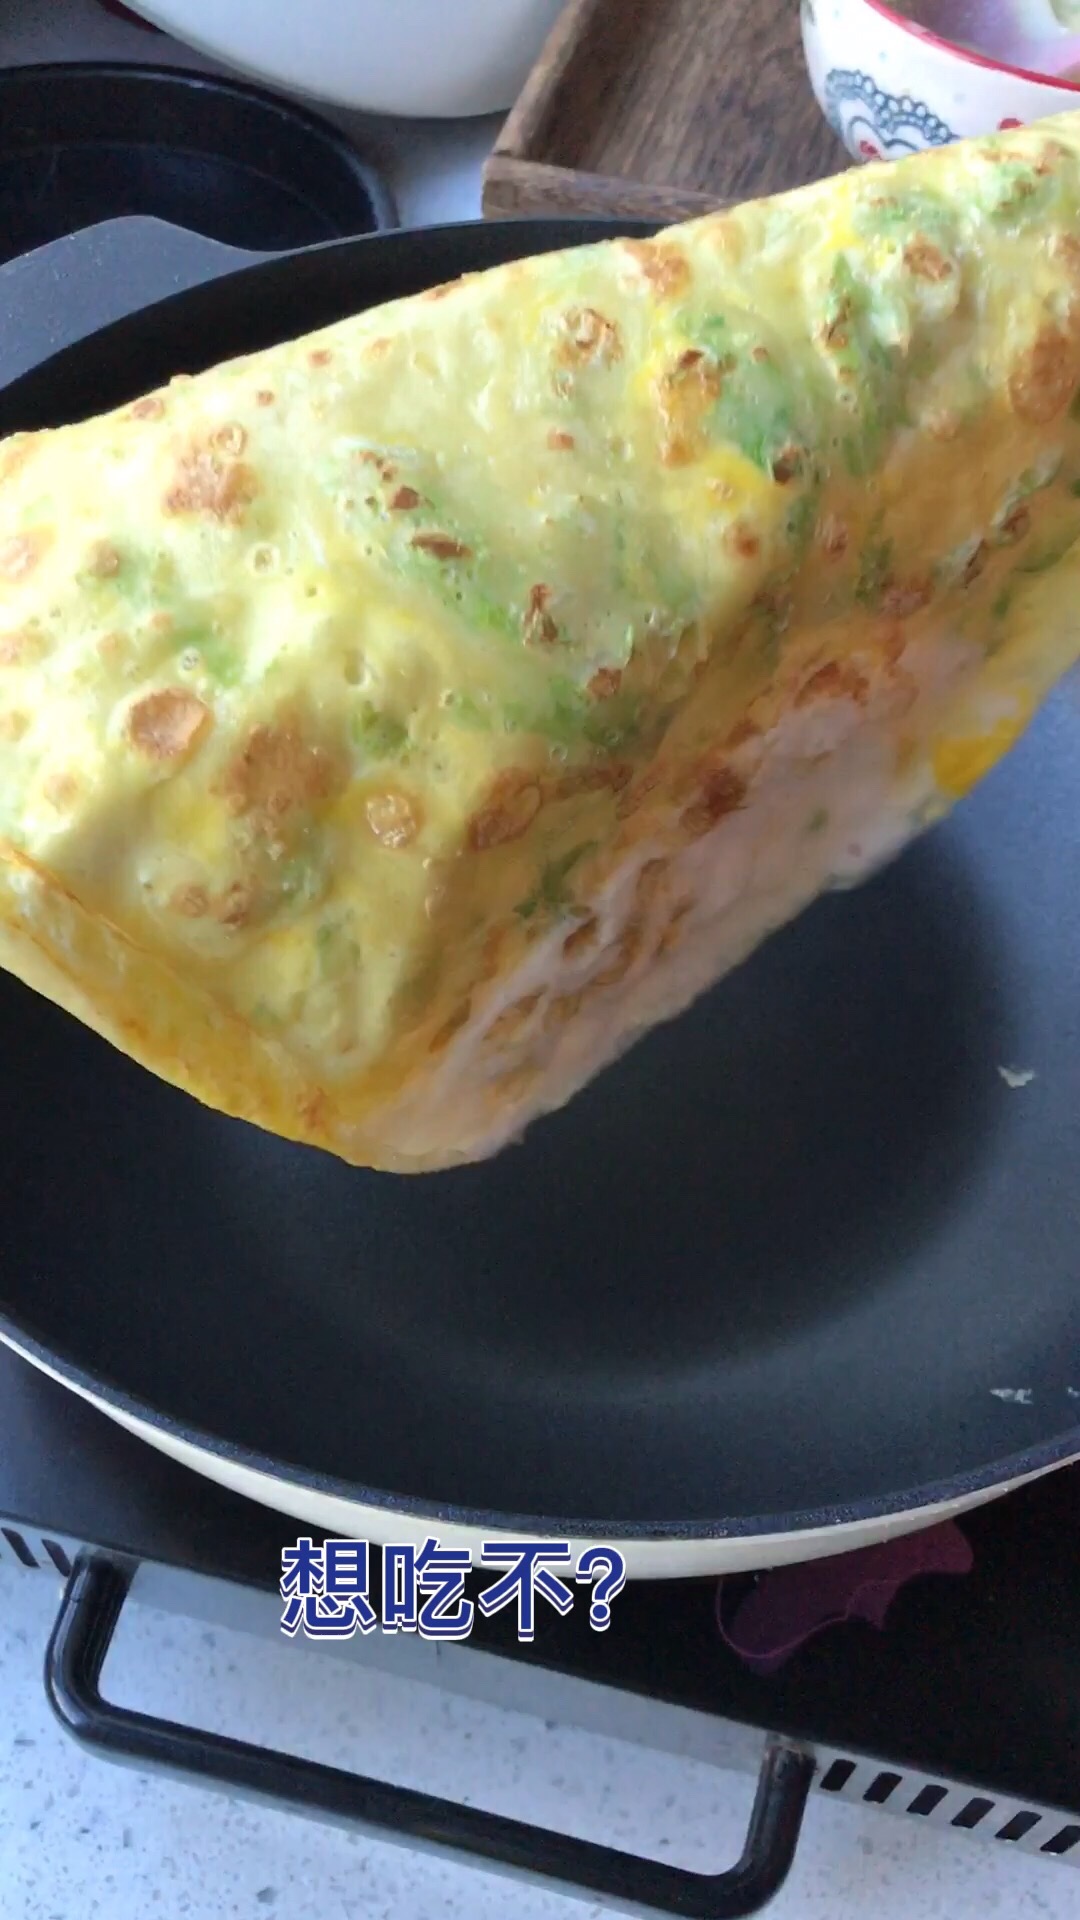 Breakfast Egg Custard recipe